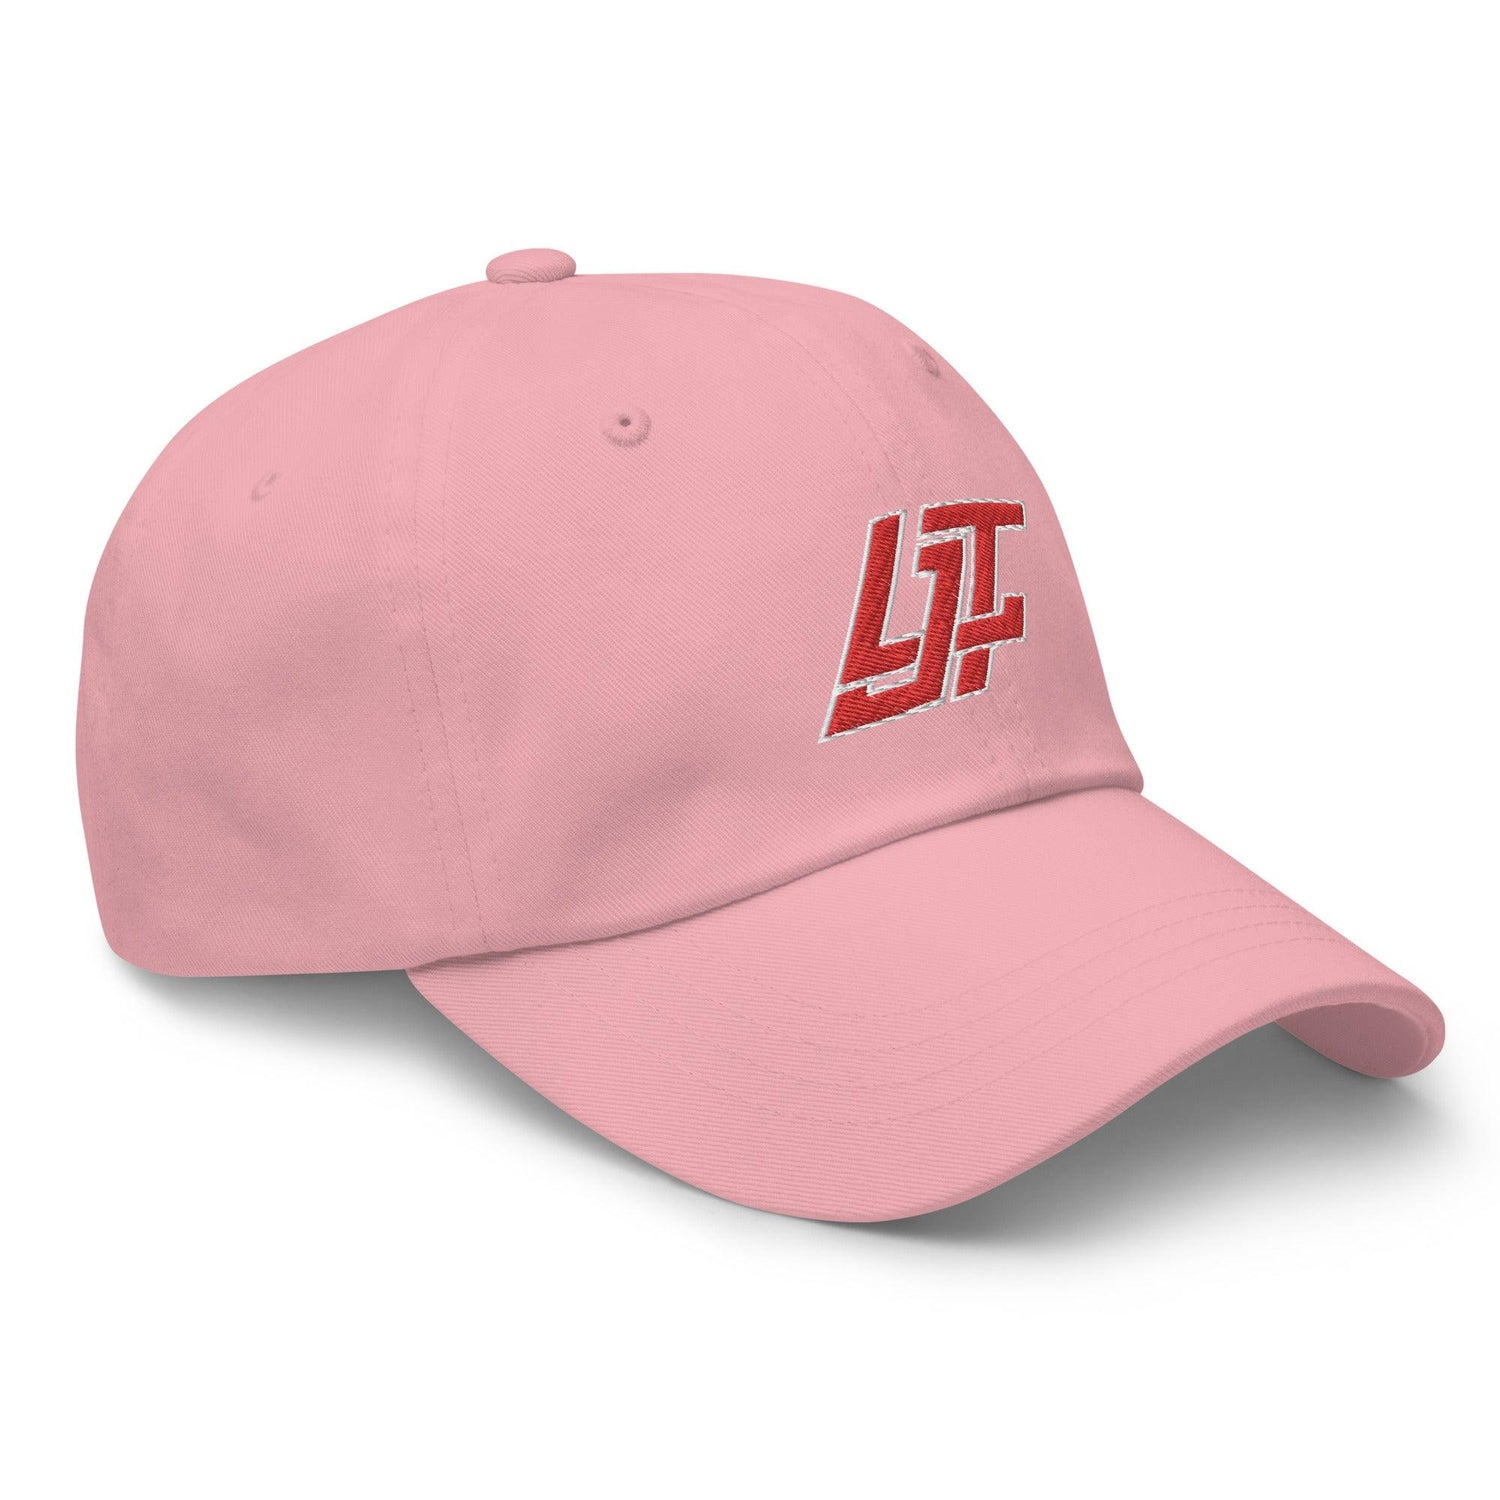 LJ Thomas "LJT" hat - Fan Arch